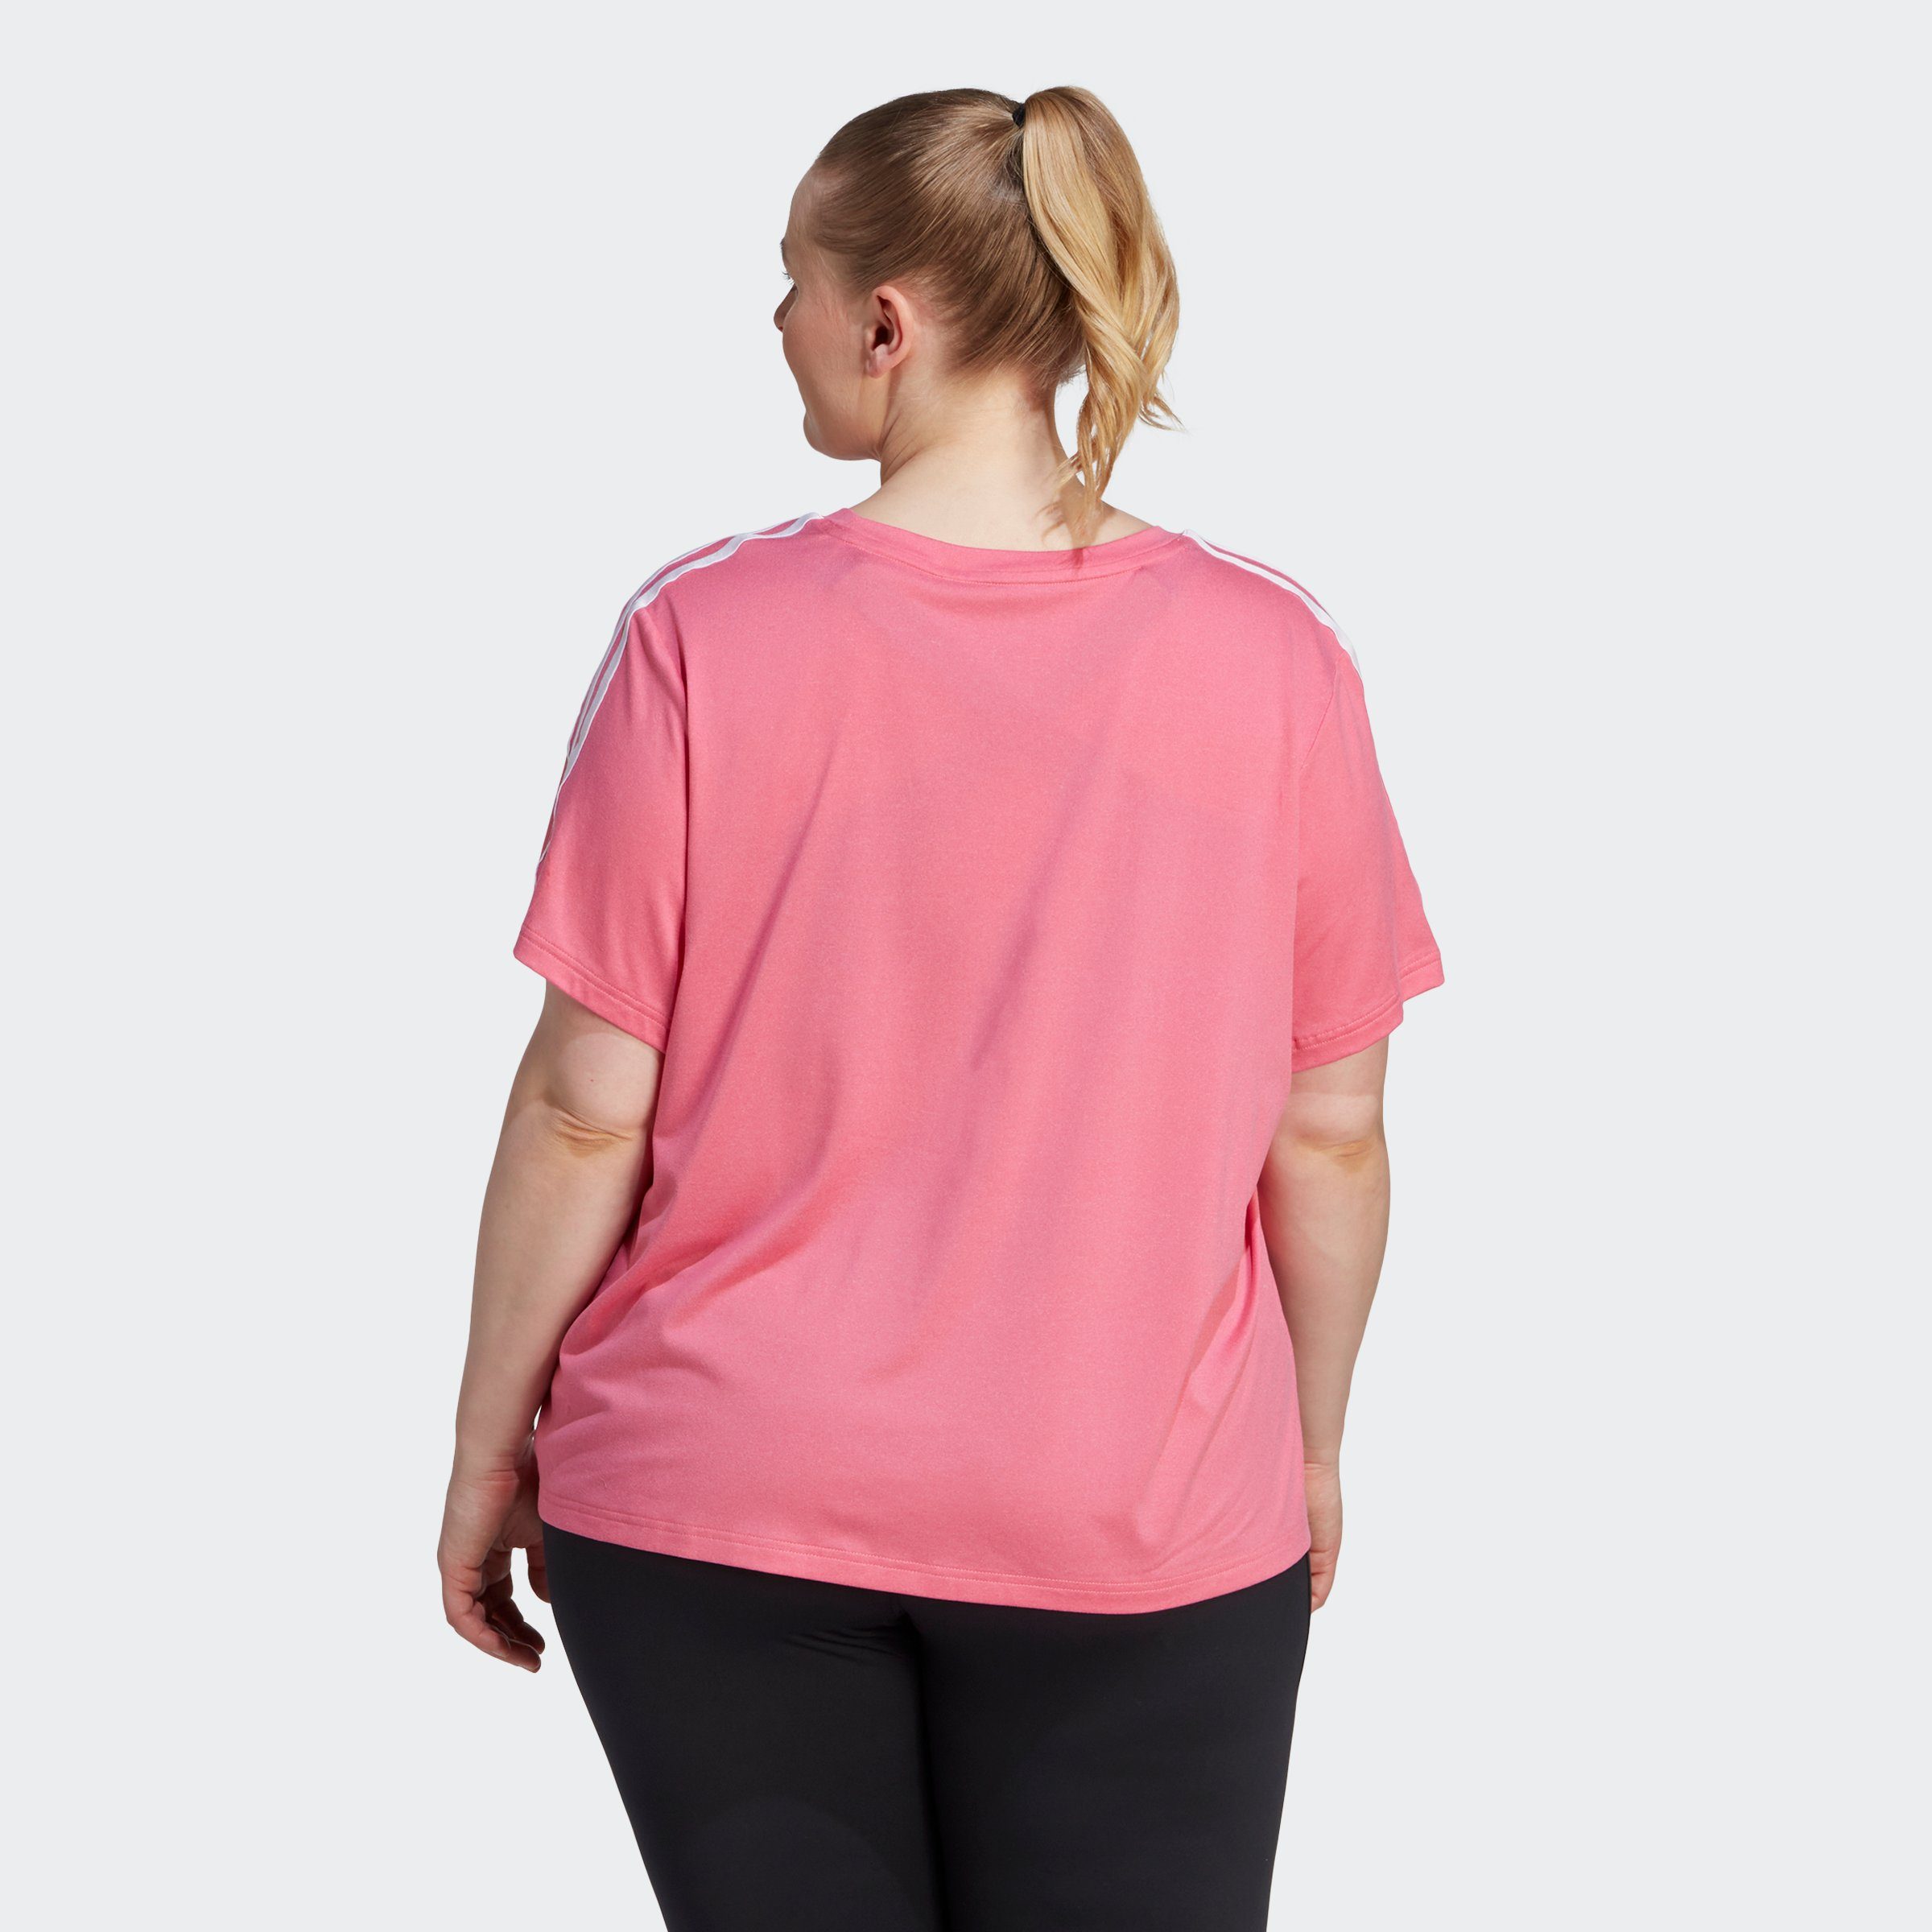 ESSENTIALS / Pink Performance 3-STREIFEN T-Shirt adidas Fusion GROSSE AEROREADY GRÖSSEN – White TRAIN